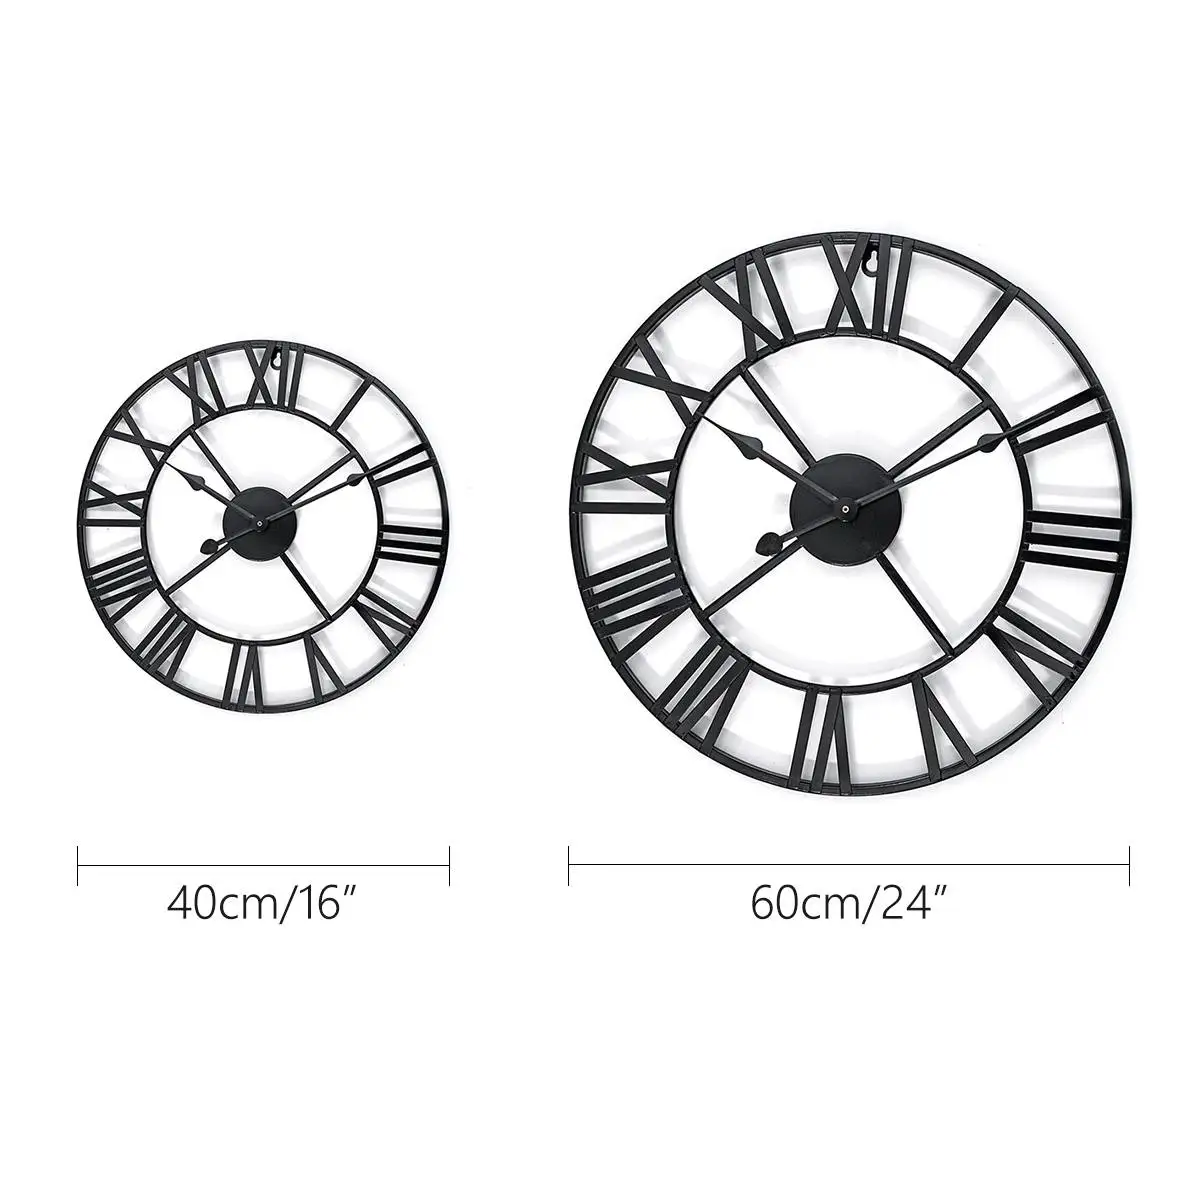 40/60 см новые модные современные круглые металлические настенные часы процесс пайки, отличающийся Большой долговечностью при кабинет офисы жилых помещений кафе и т. д